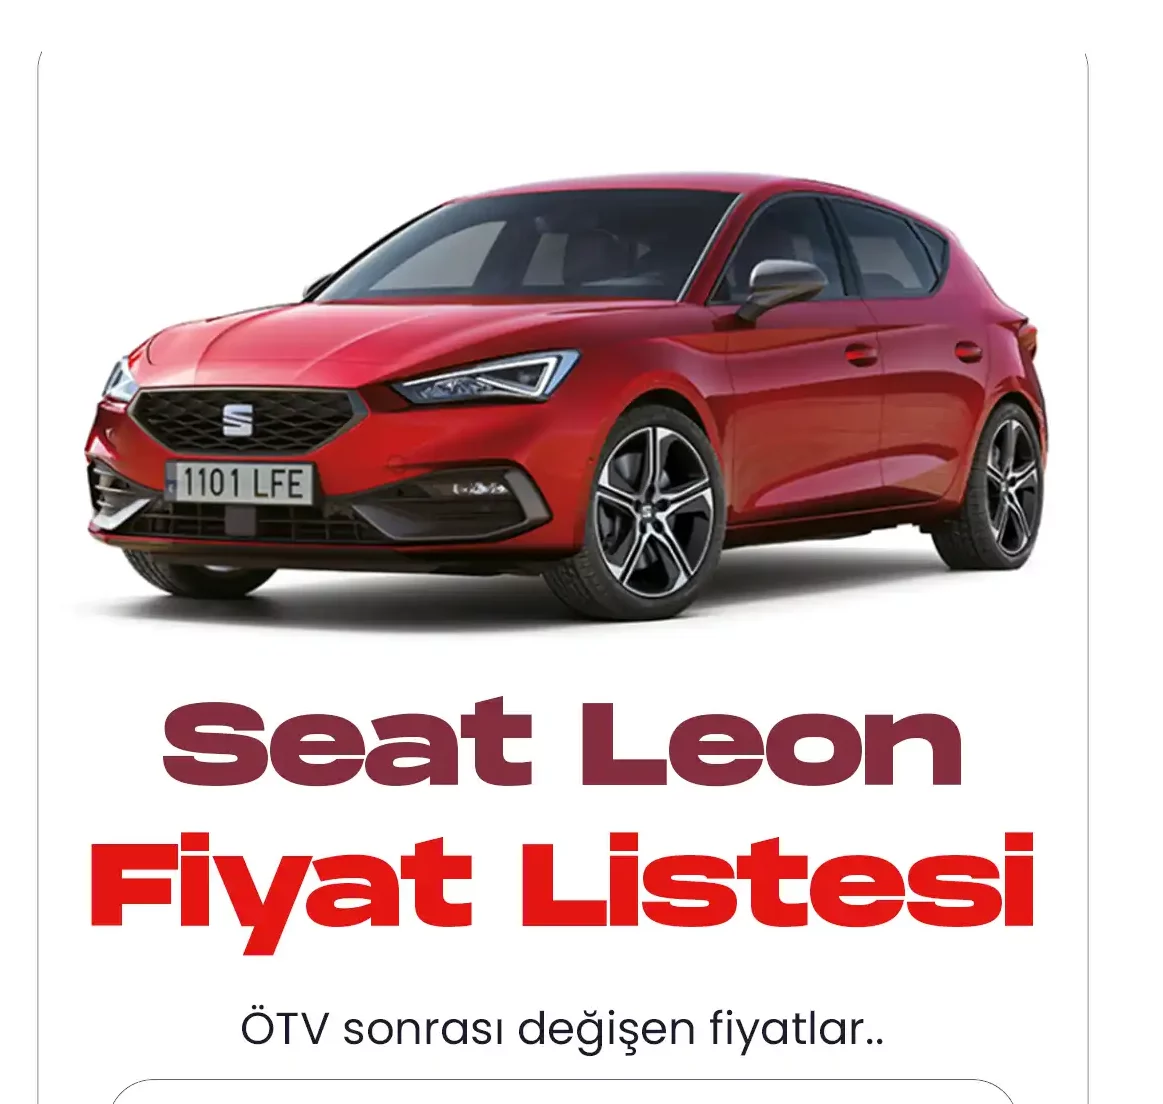 Seat Leon Aralık fiyat listesi yayımlandı. Leon model, Seat markasının en popüler araçlarından biri arasında yer alıyor. Spor araç tasarımıyla erkekler tarafından çok sık tercih ediliyor.